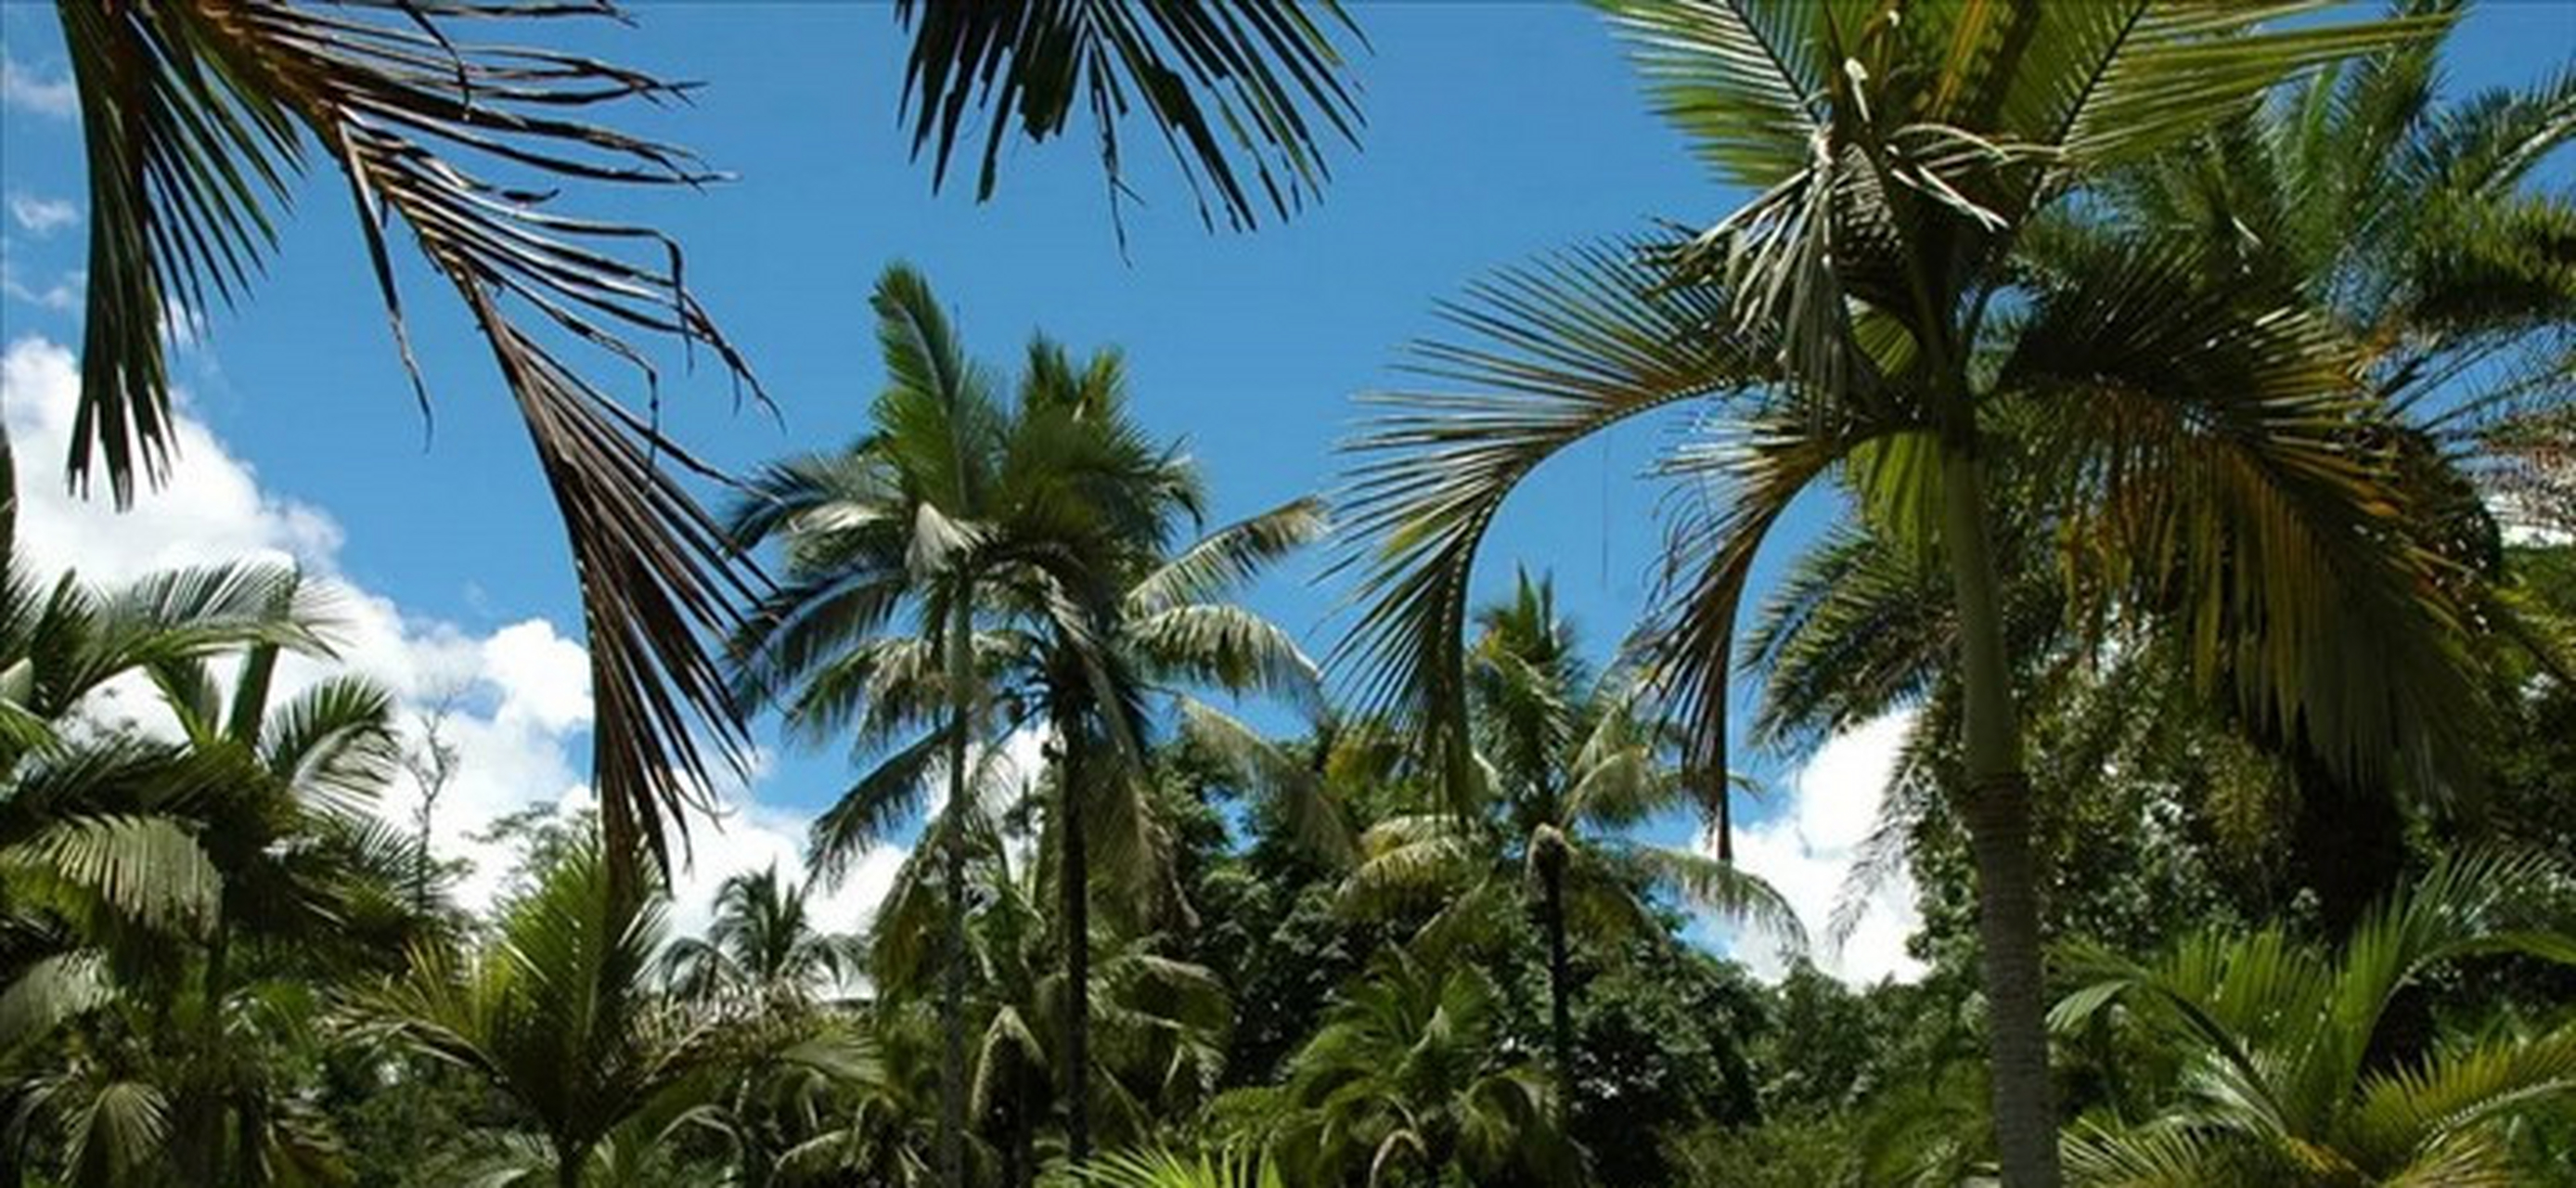 西谷椰子树从外形上看,于人们常见的椰子树相似,但是人们都知道,椰子